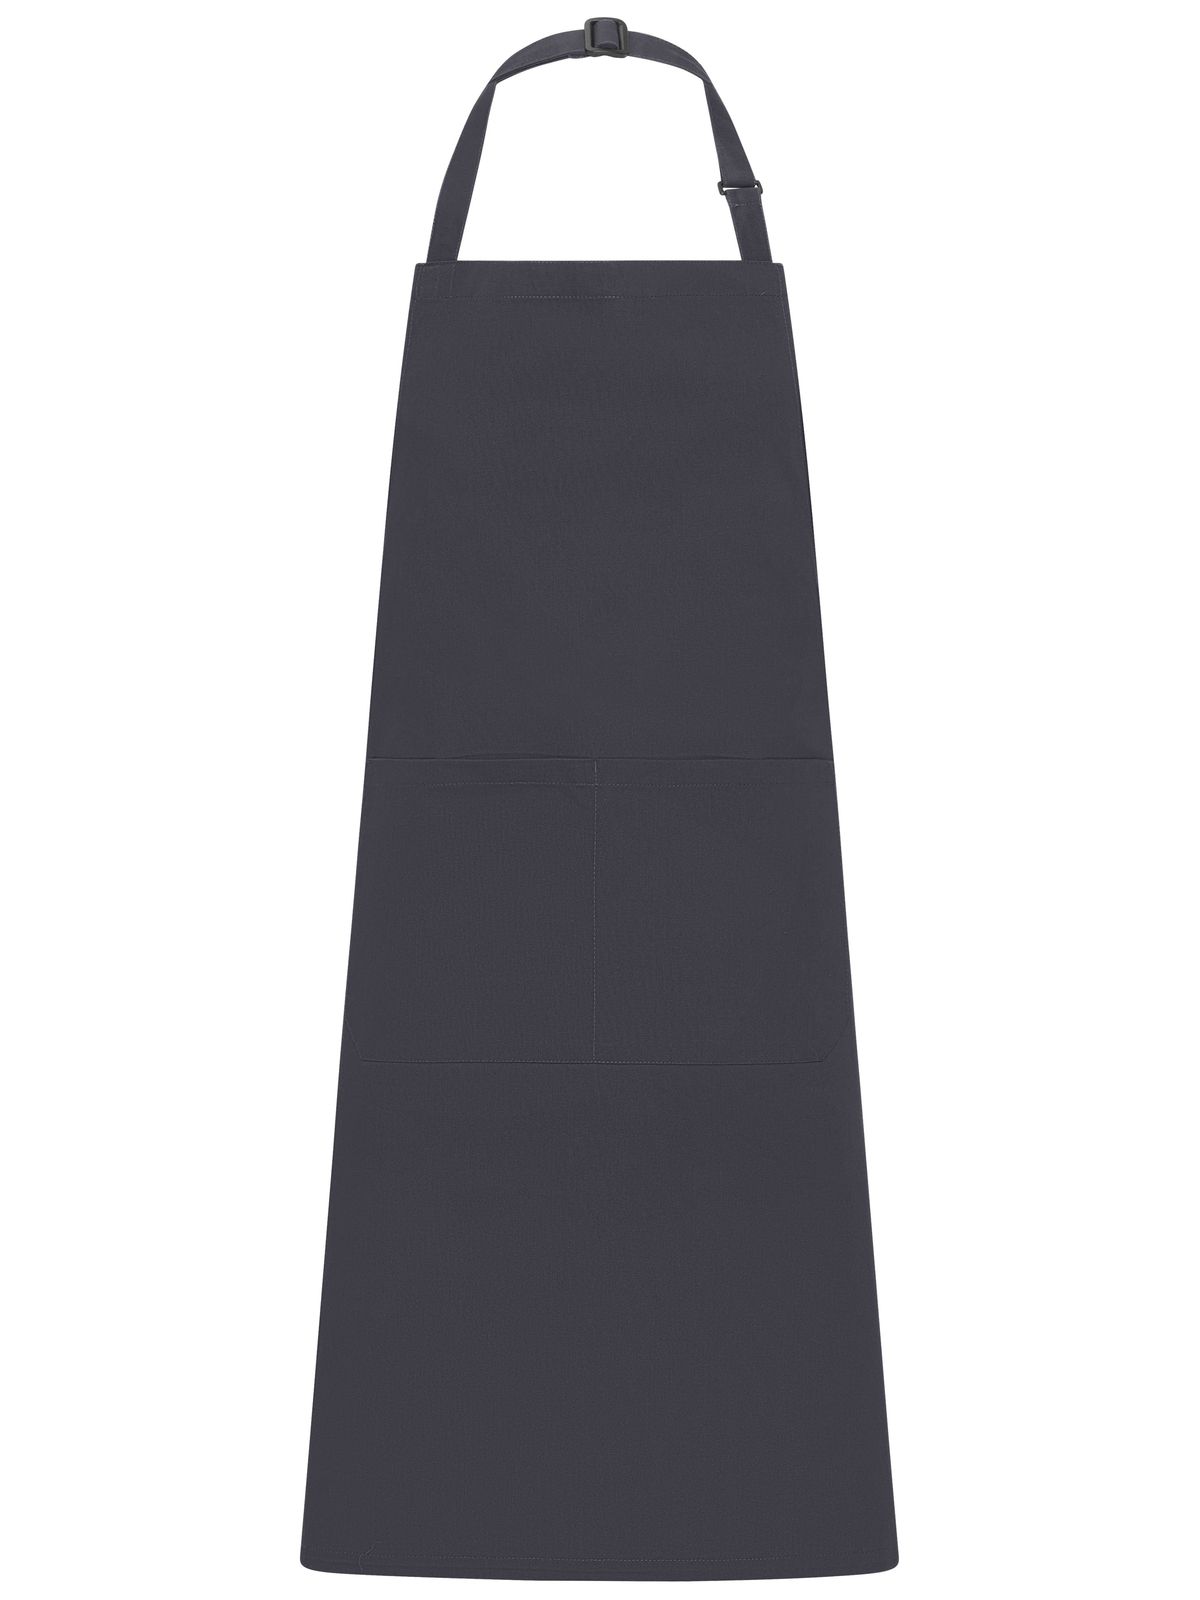 apron-with-bib-carbon.webp